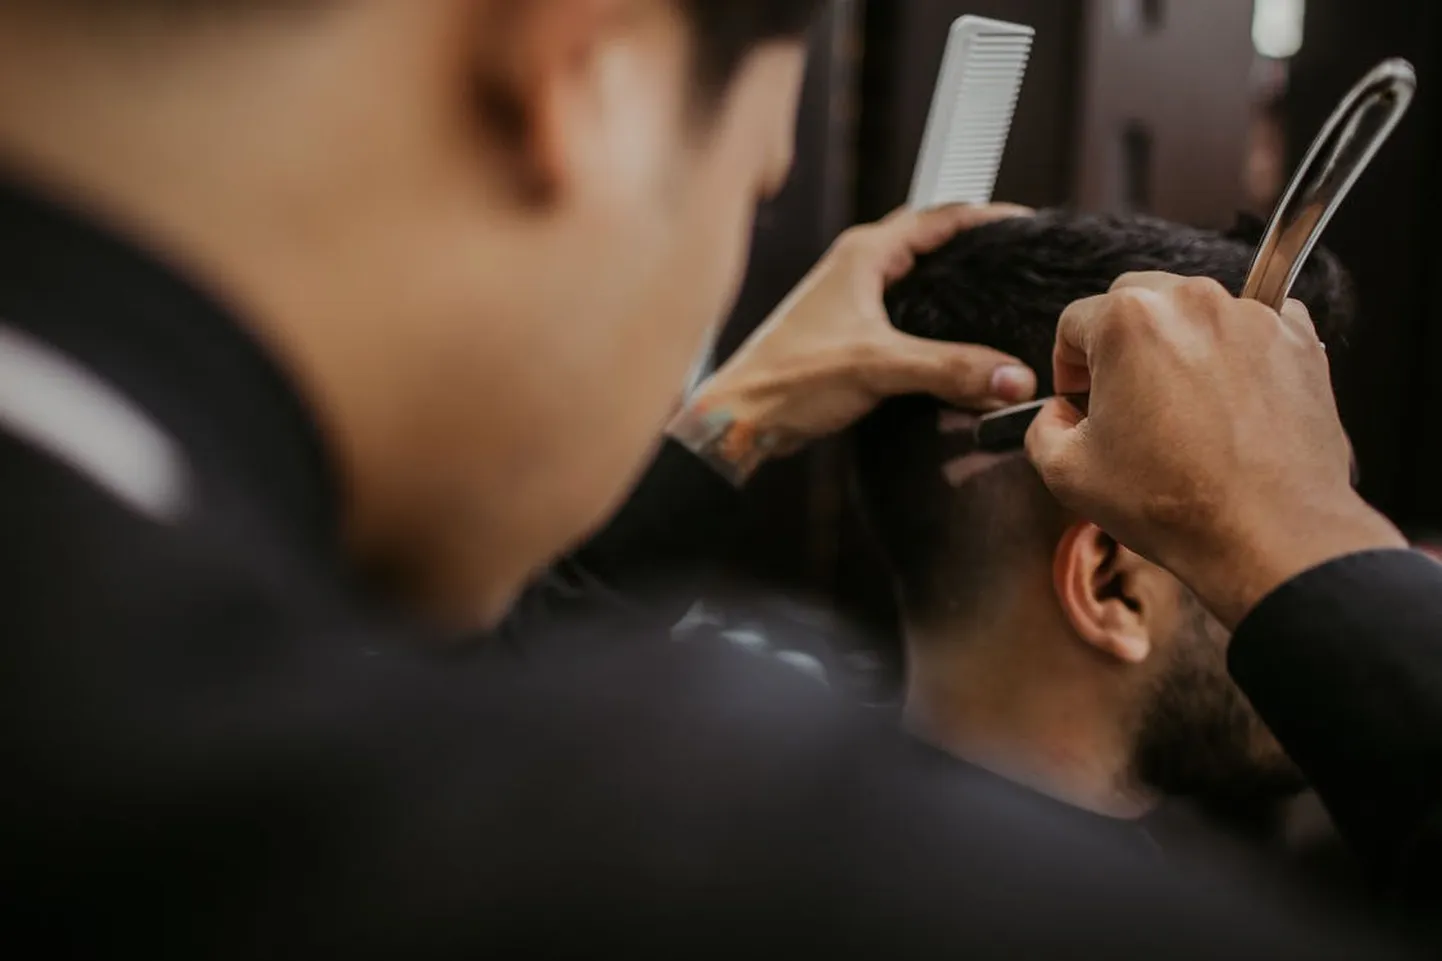 Meeste juukselõikus maksab mõnes kohas viis eurot, samas kui teises kohas küsitakse töö eest mitukümend eurot.